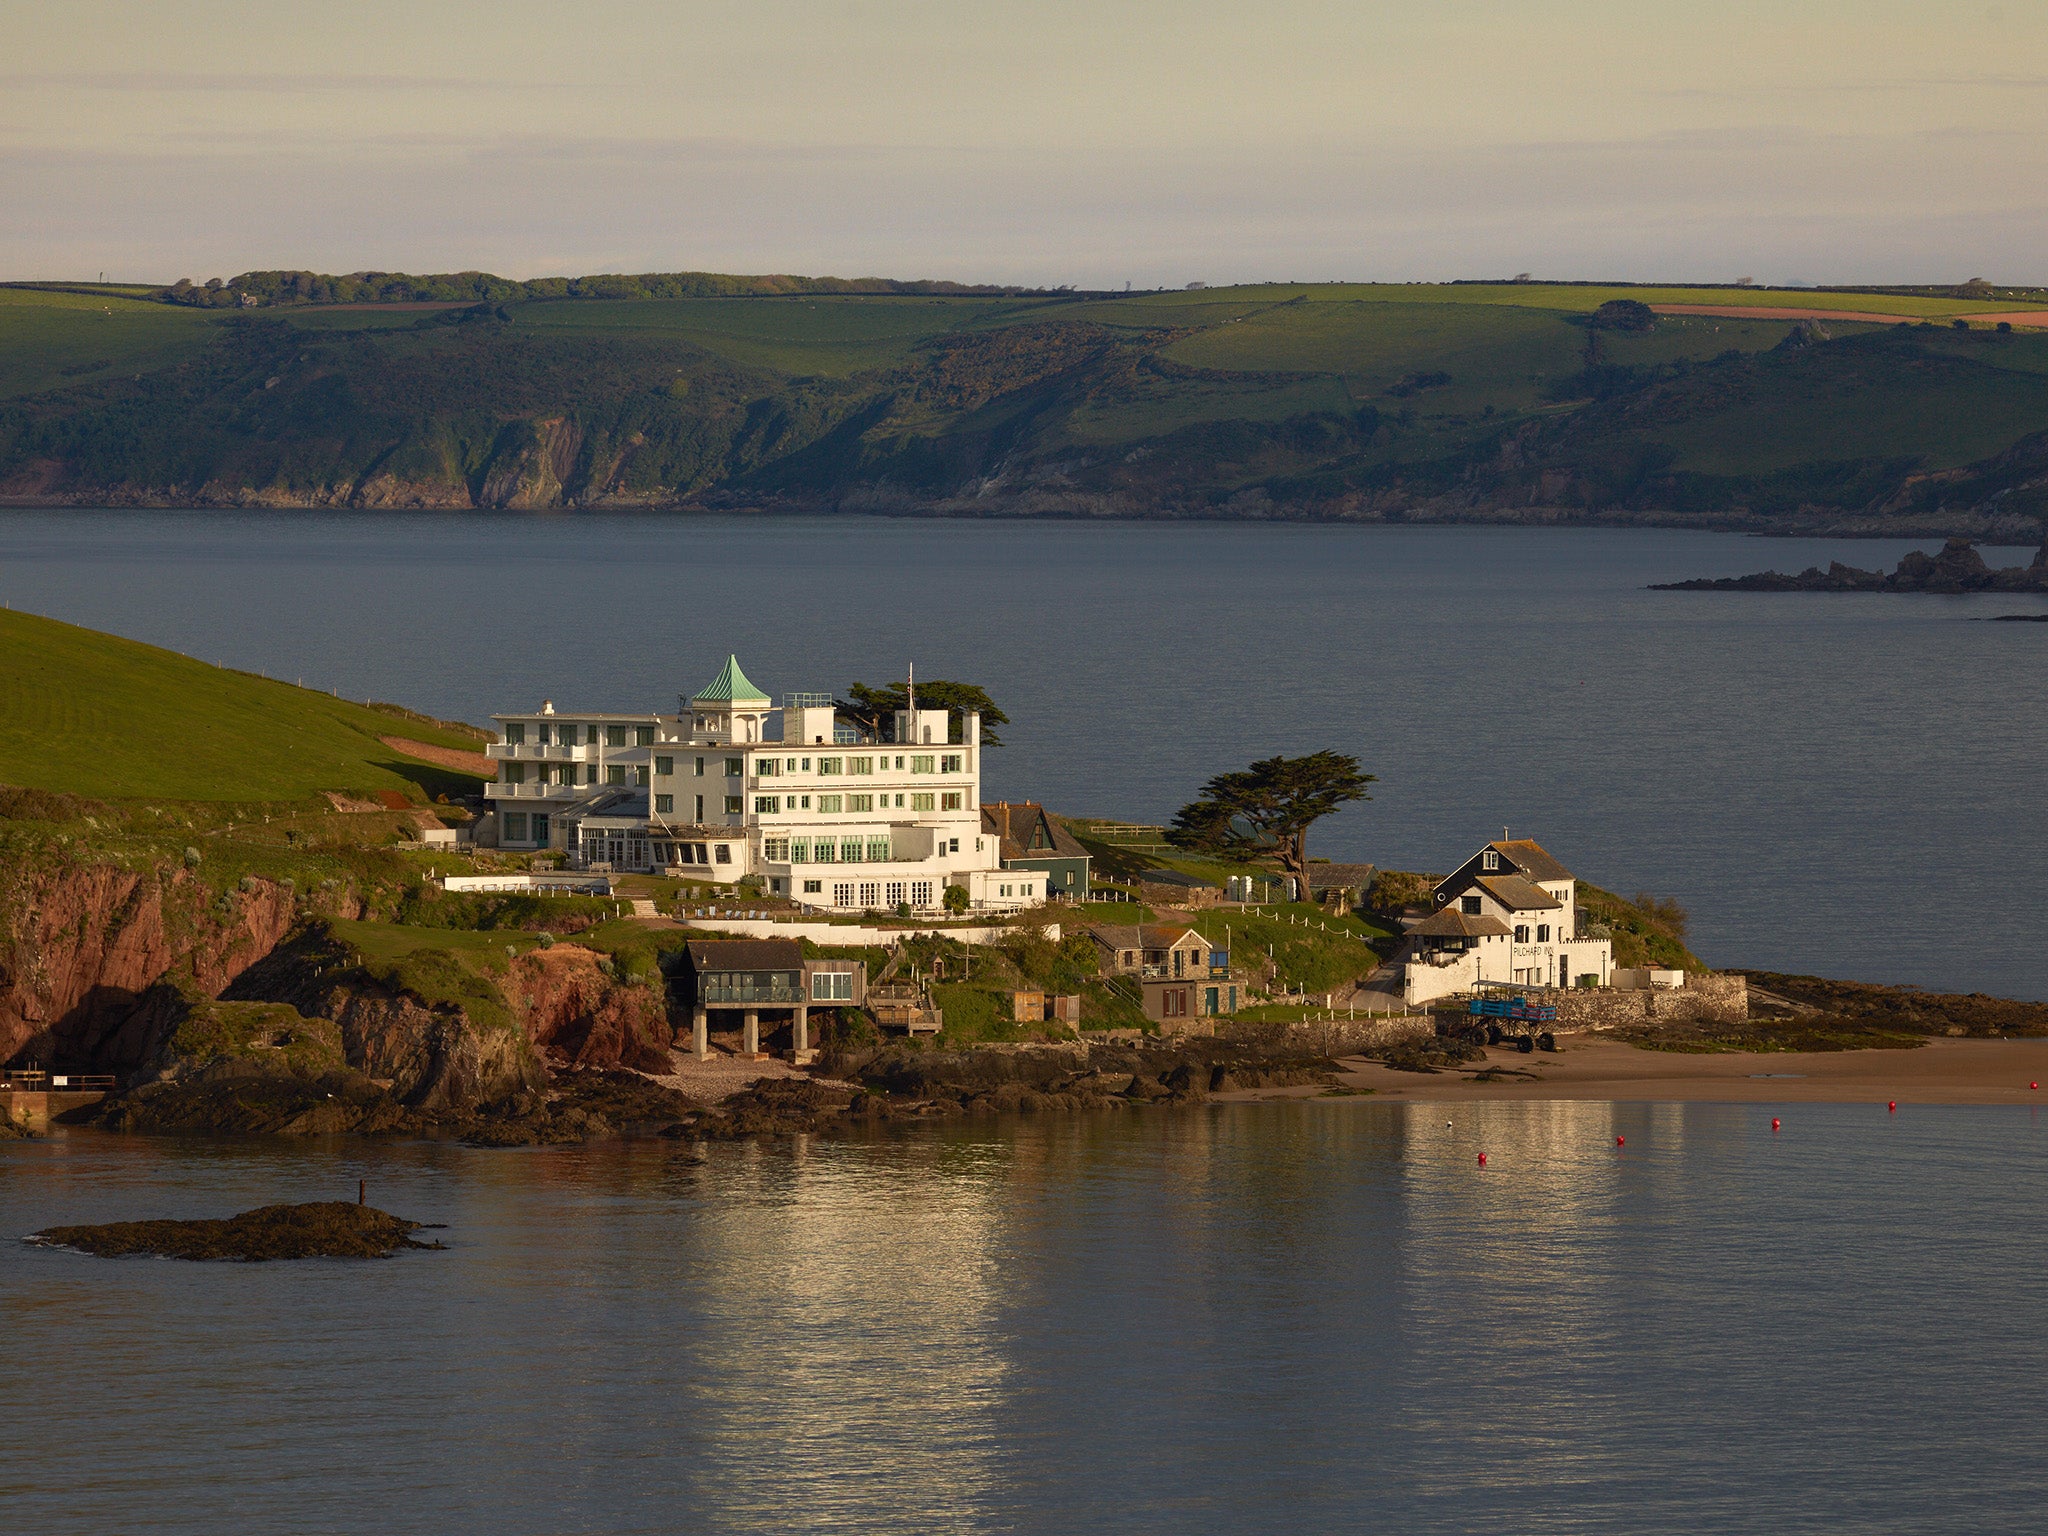 Burgh Island Hotel off the Devon coast